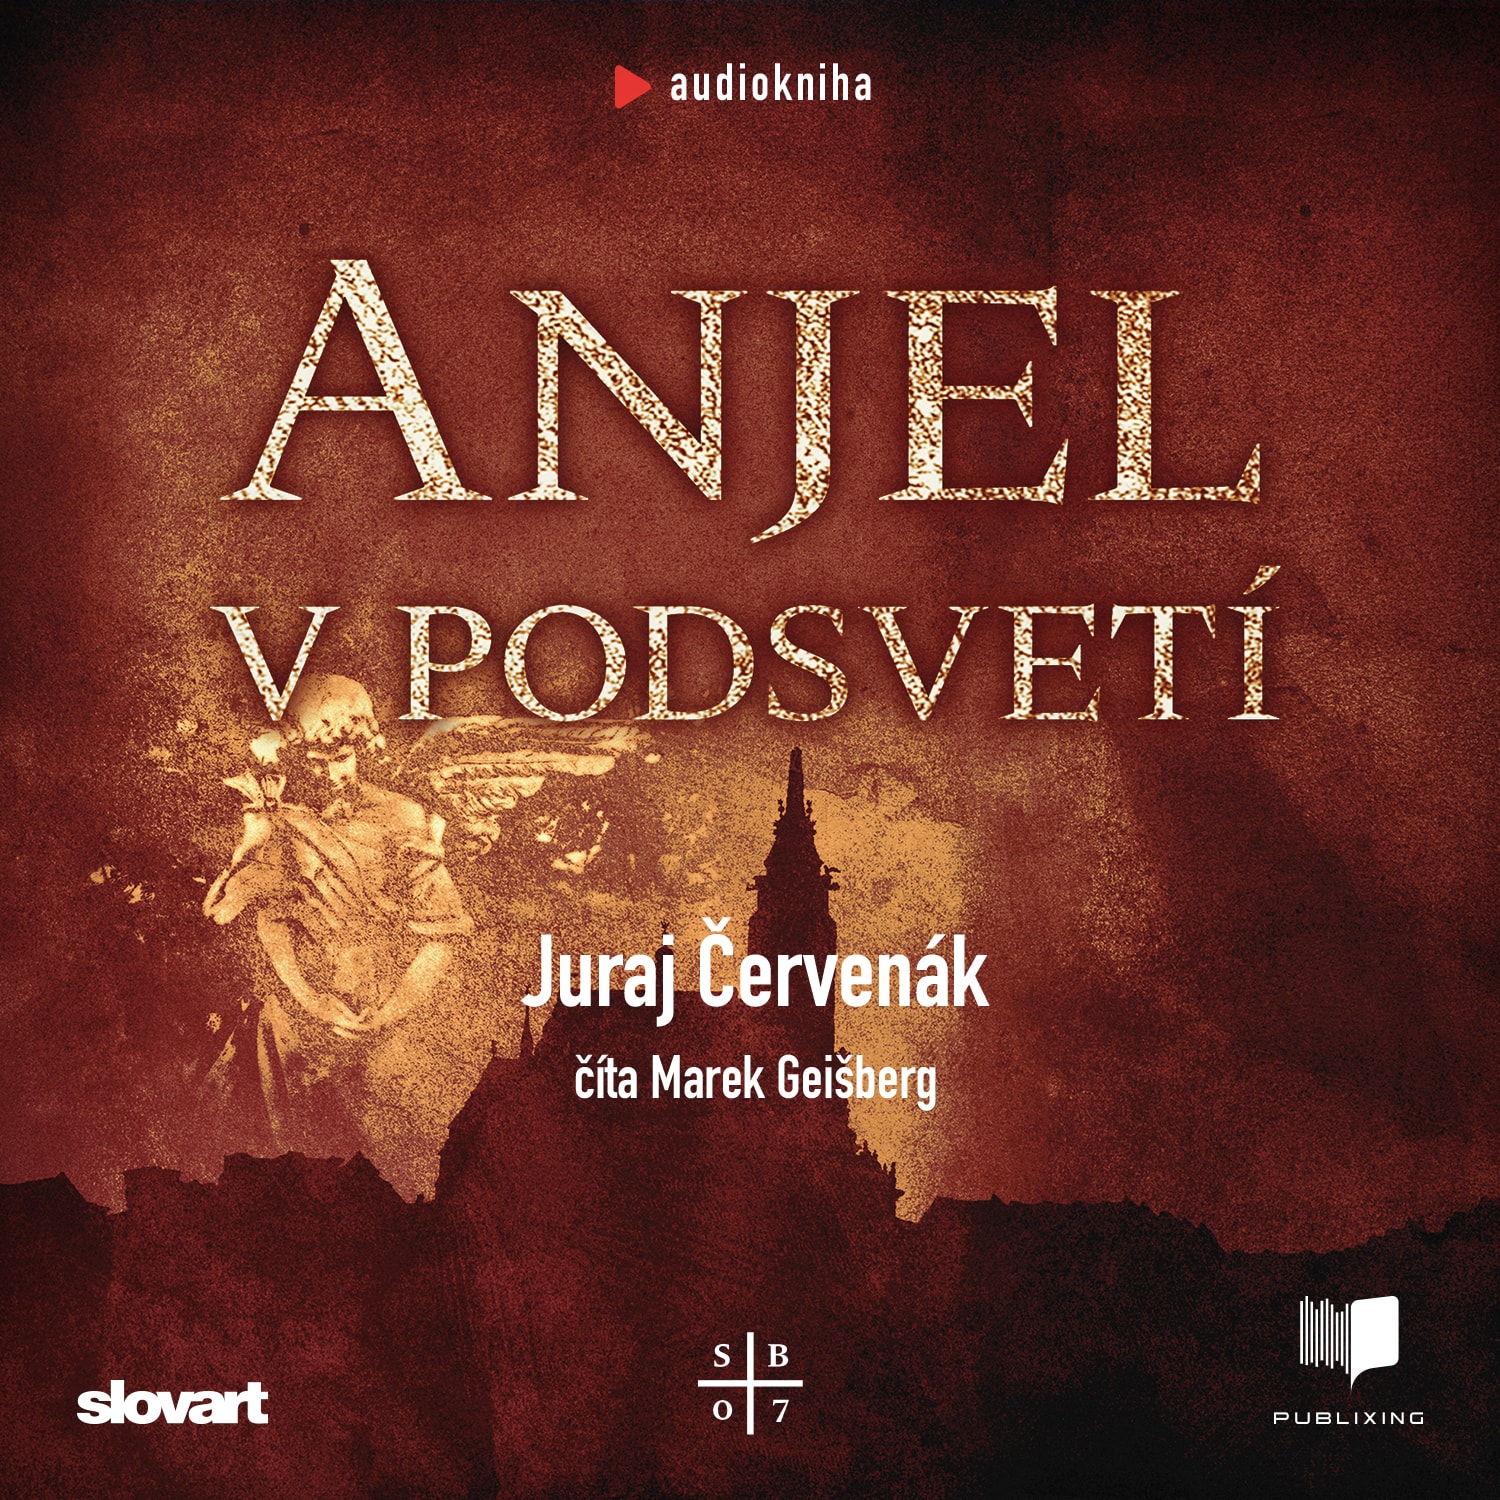 Audiokniha Anjel v podsvetí - Juraj Červenák